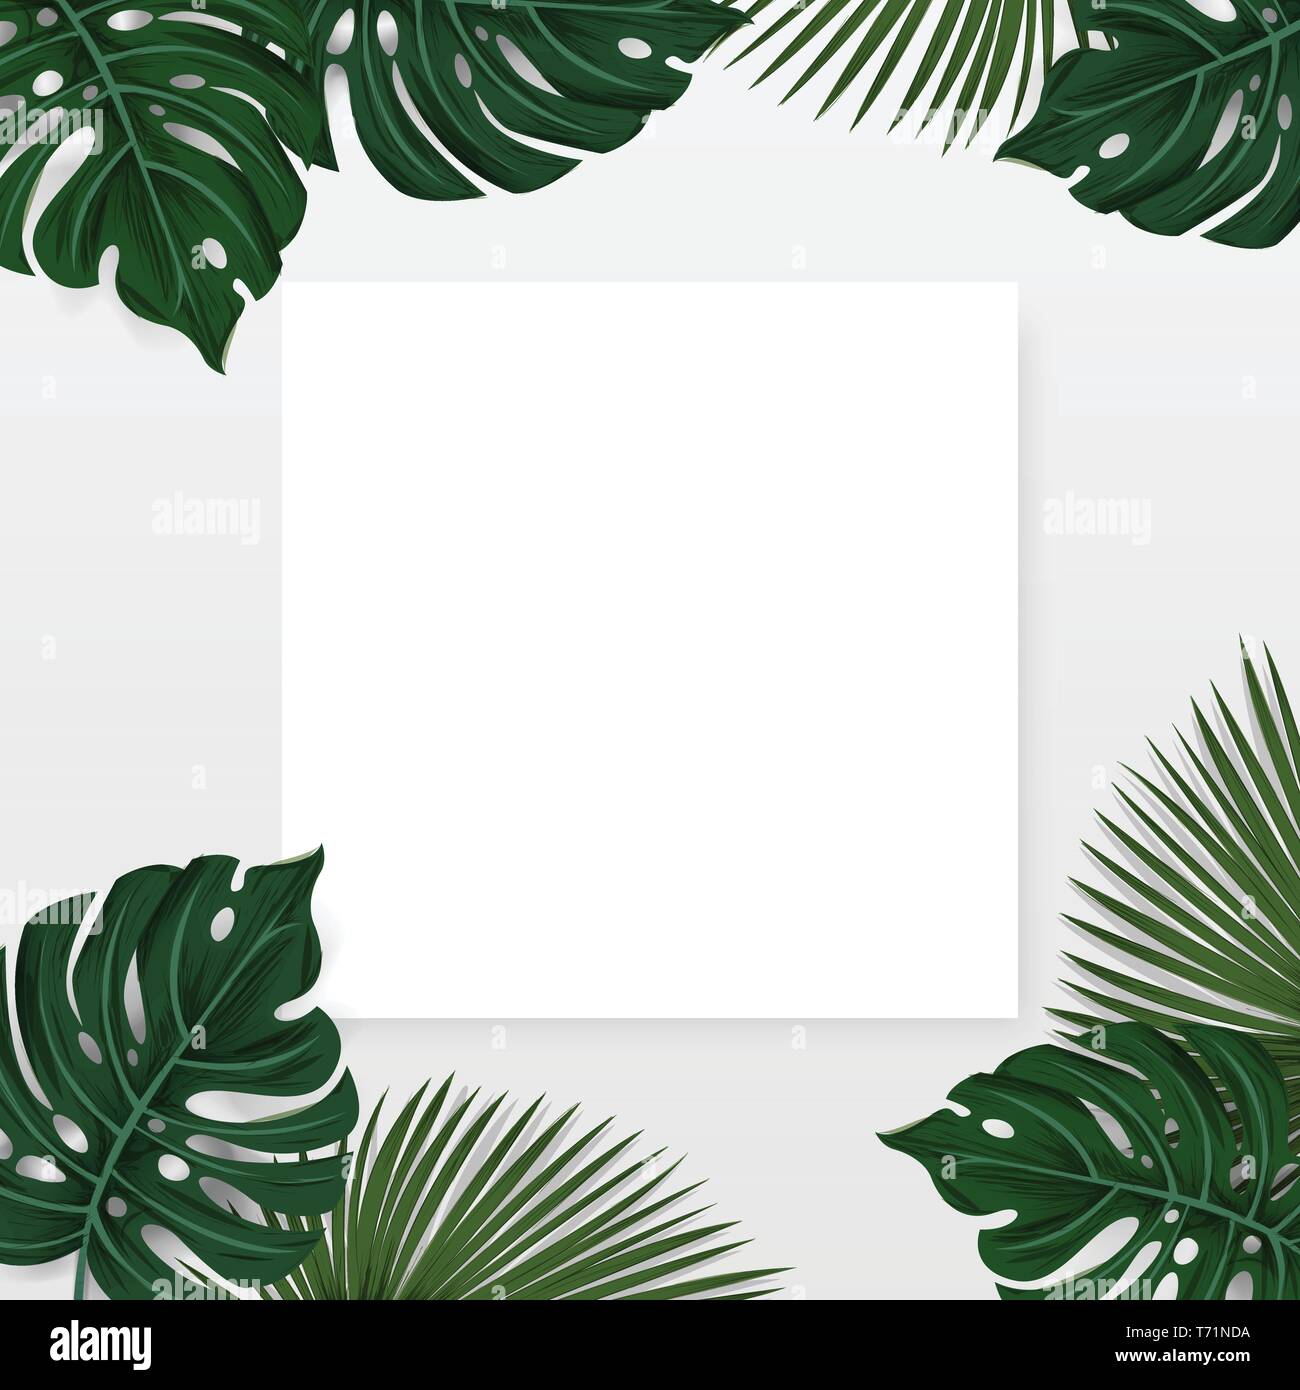 Diseño creativo hizo fondo tropical con hojas de palmeras y plantas exóticas con tarjeta de papel blanco nota aislado sobre fondo blanco , plana naturaleza laical. Ilustración del Vector